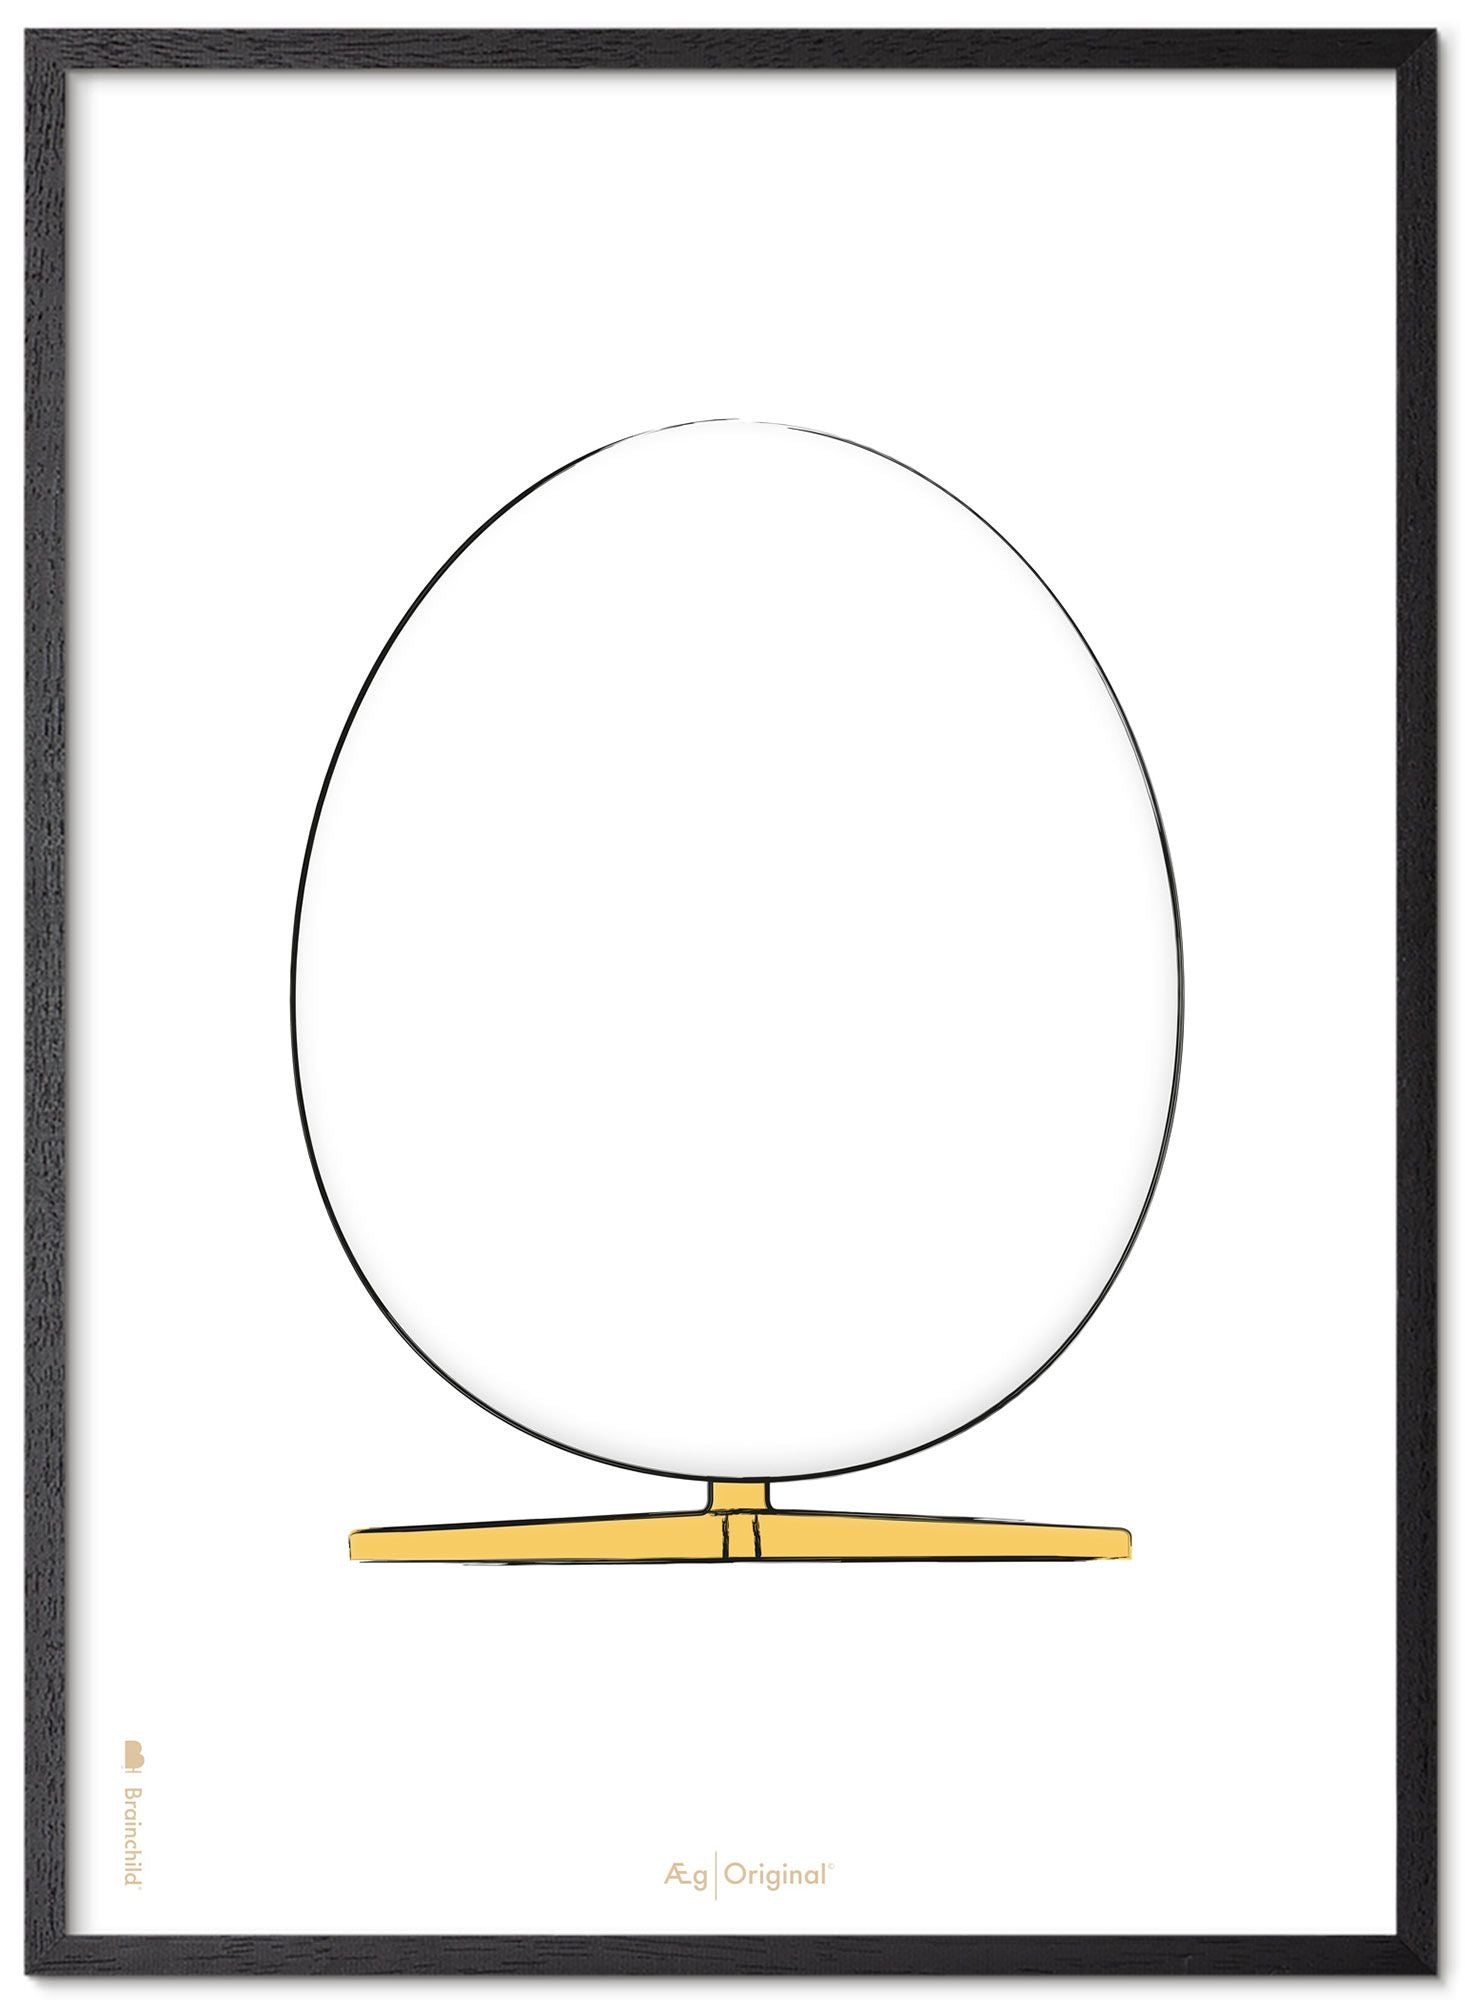 Brainchild The Egg Design Sketch Affisch Frame Made av svart lackerat trä 70x100 cm, vit bakgrund